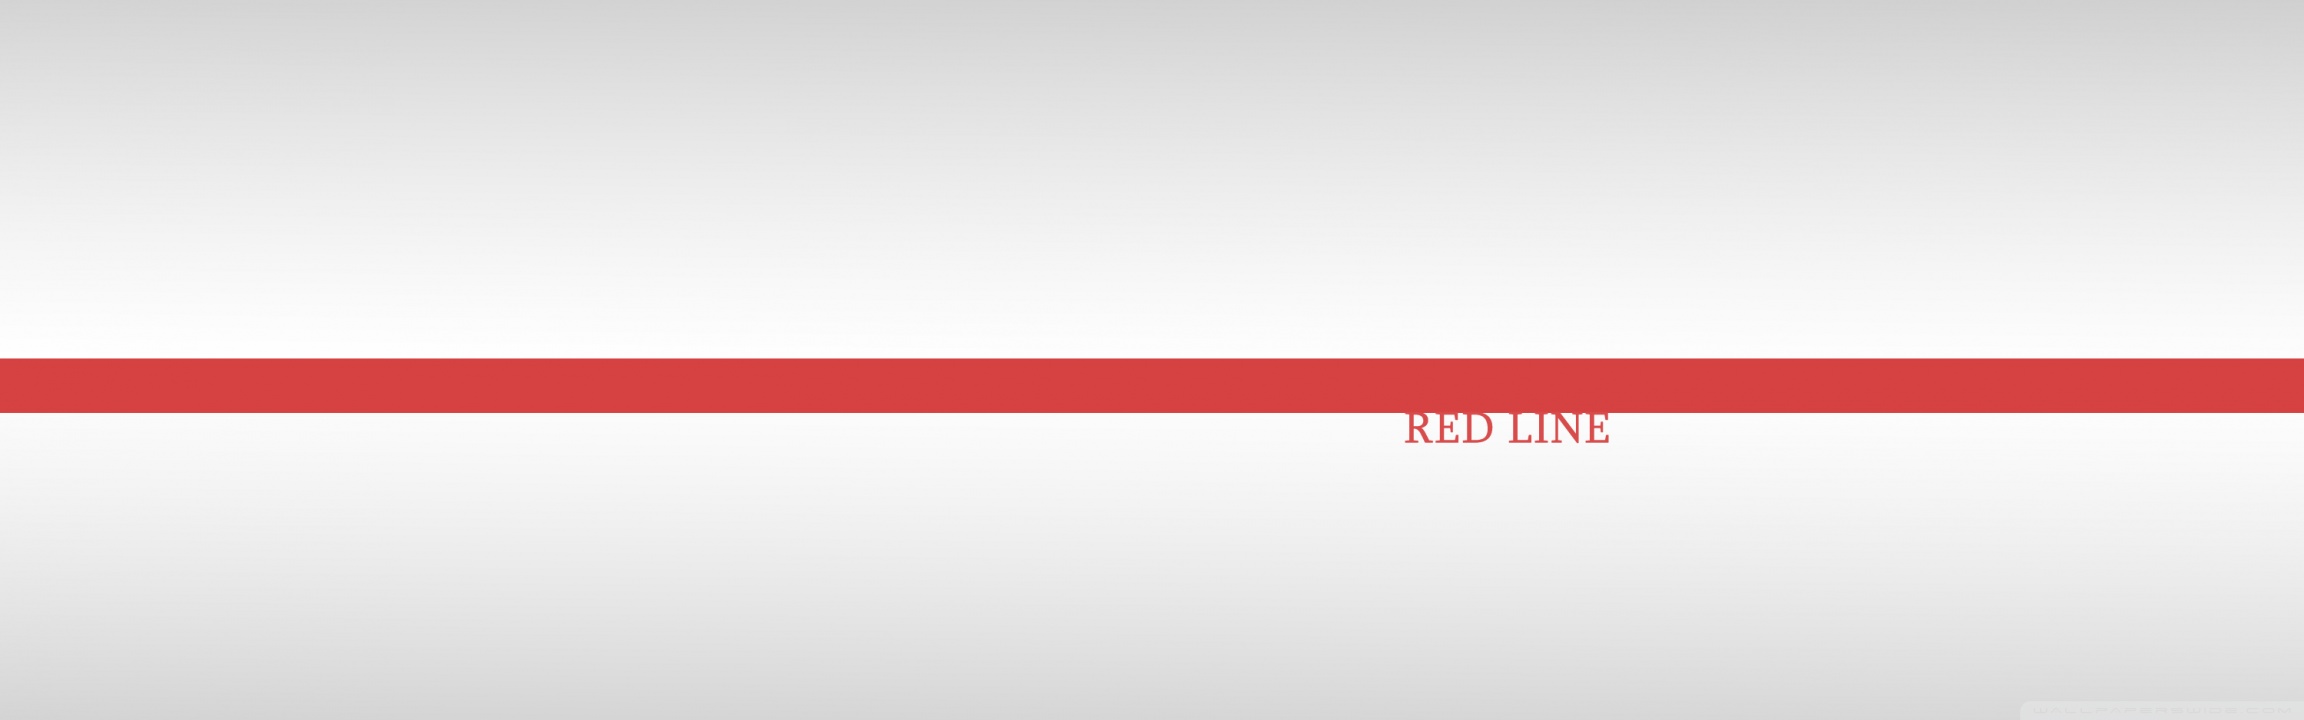 Красная линия телеканал прямой эфир. Красная линия. Красная полоса на белом фоне. Белый фон с красными линиями. Красная линия Red line.